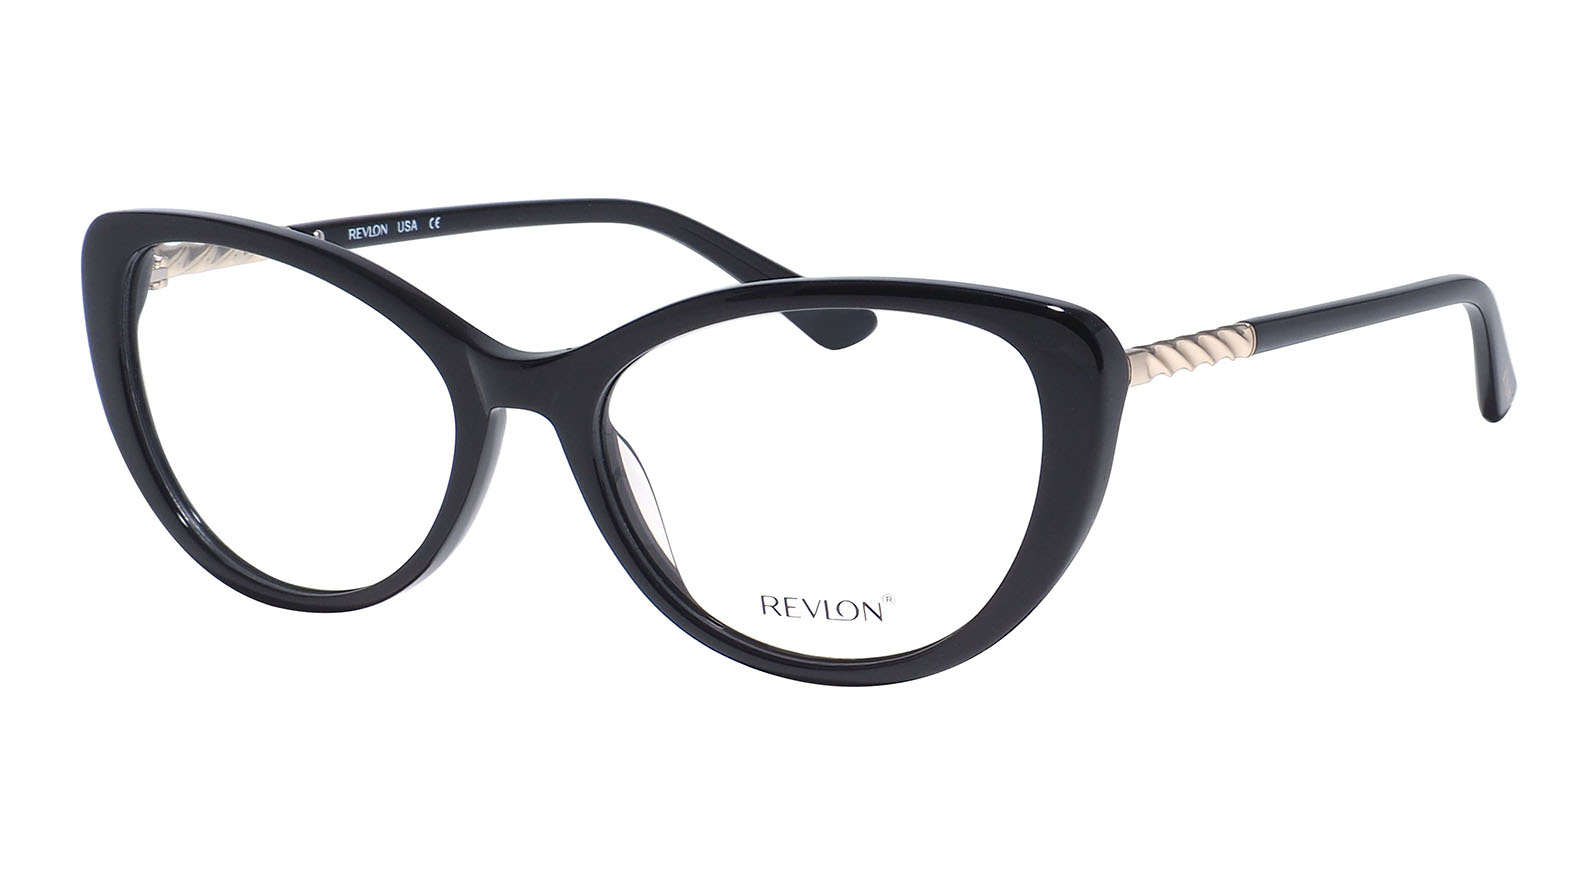 Revlon 1847 07 очки корригирующие 1гр линза cr 39 мужские